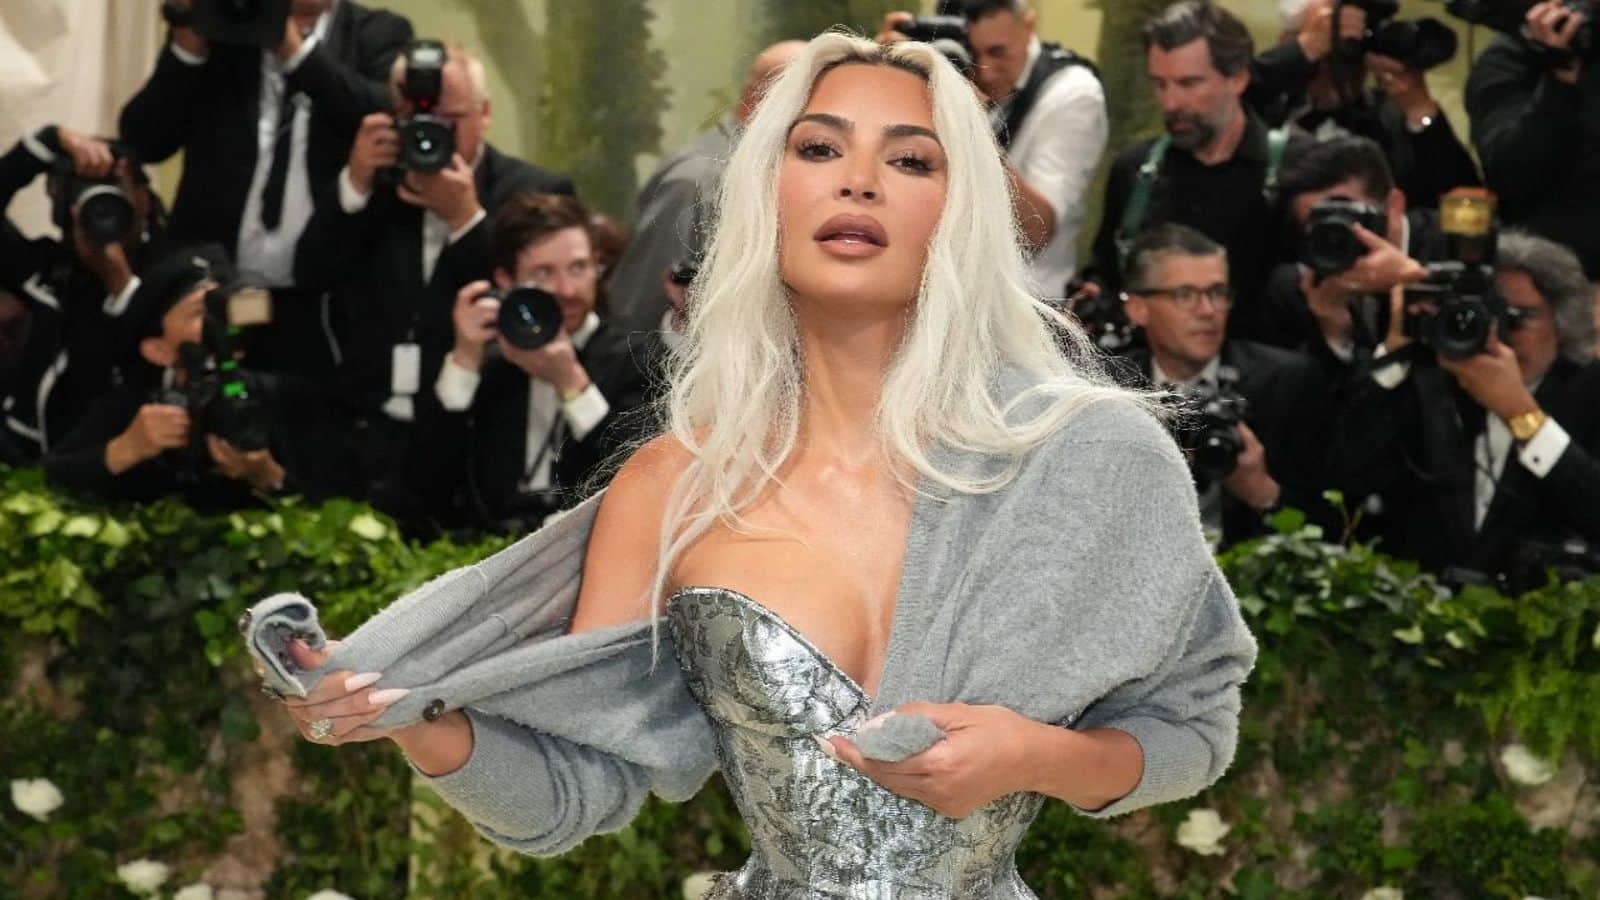 Times Kim Kardashian ignited body image debate